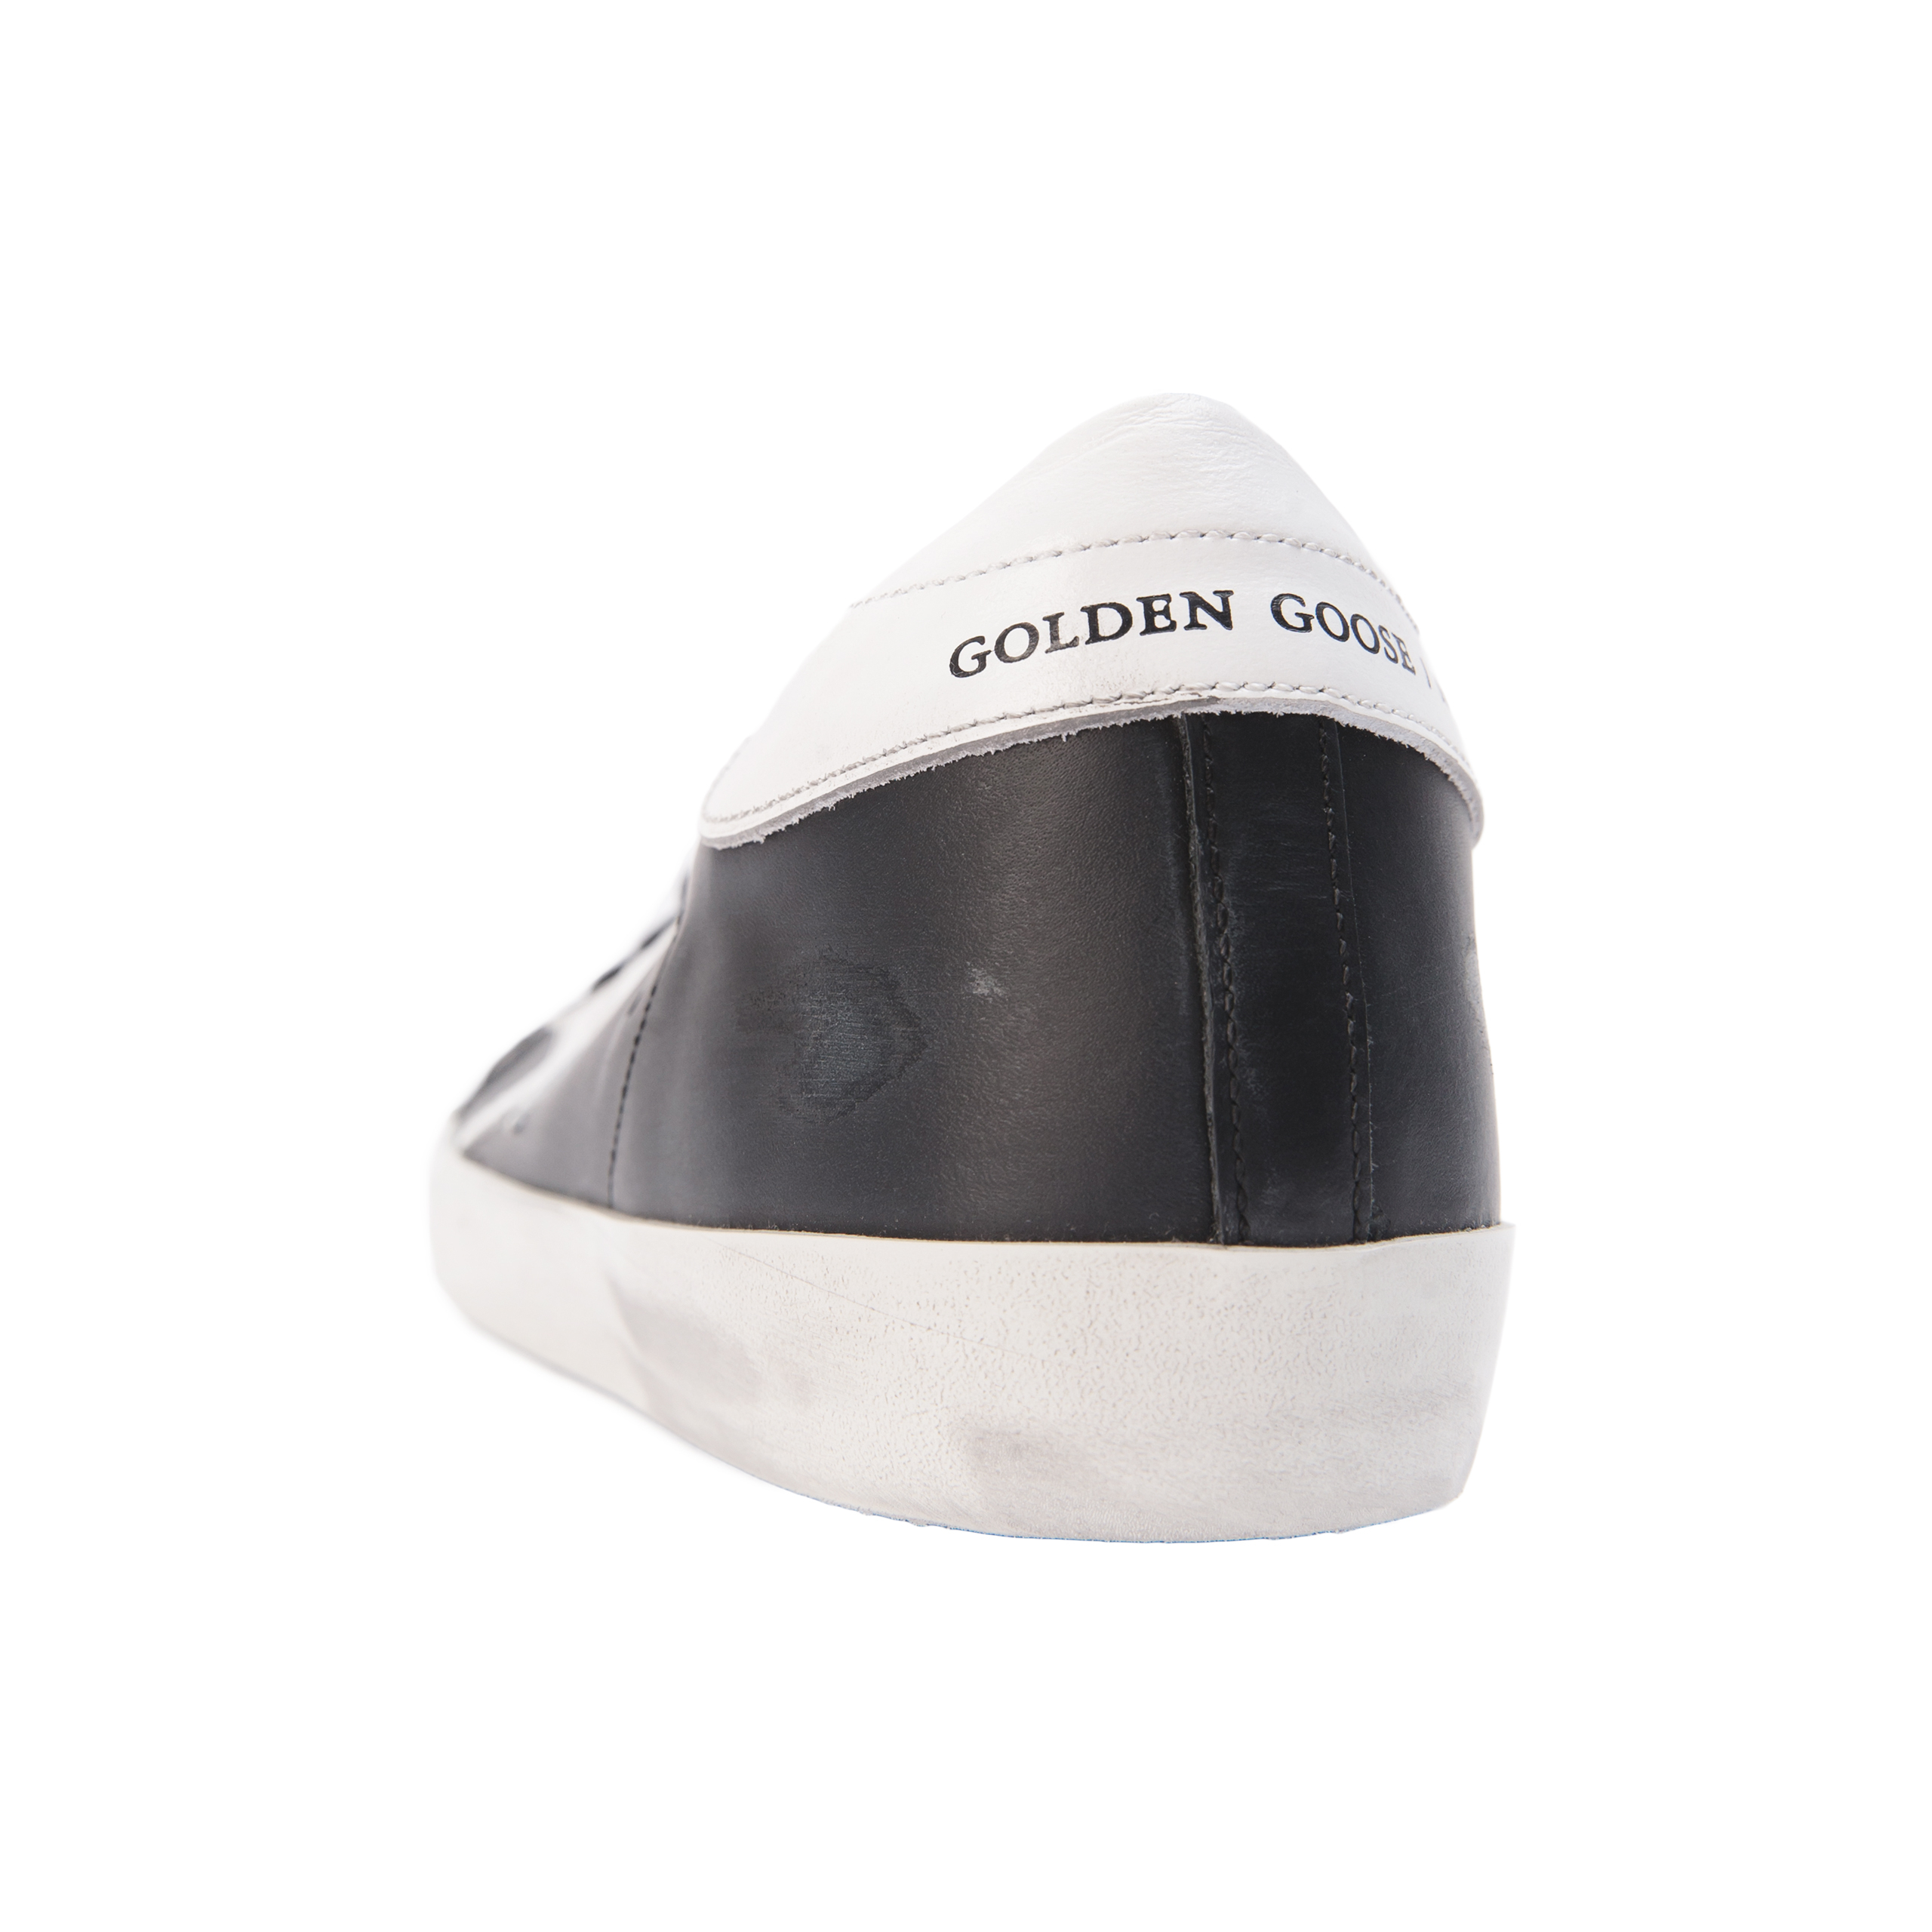 Черные кеды Superstar Golden Goose GWF00101/F000321/80203, размер 41;40;39;38;37;36 GWF00101/F000321/80203 - фото 3